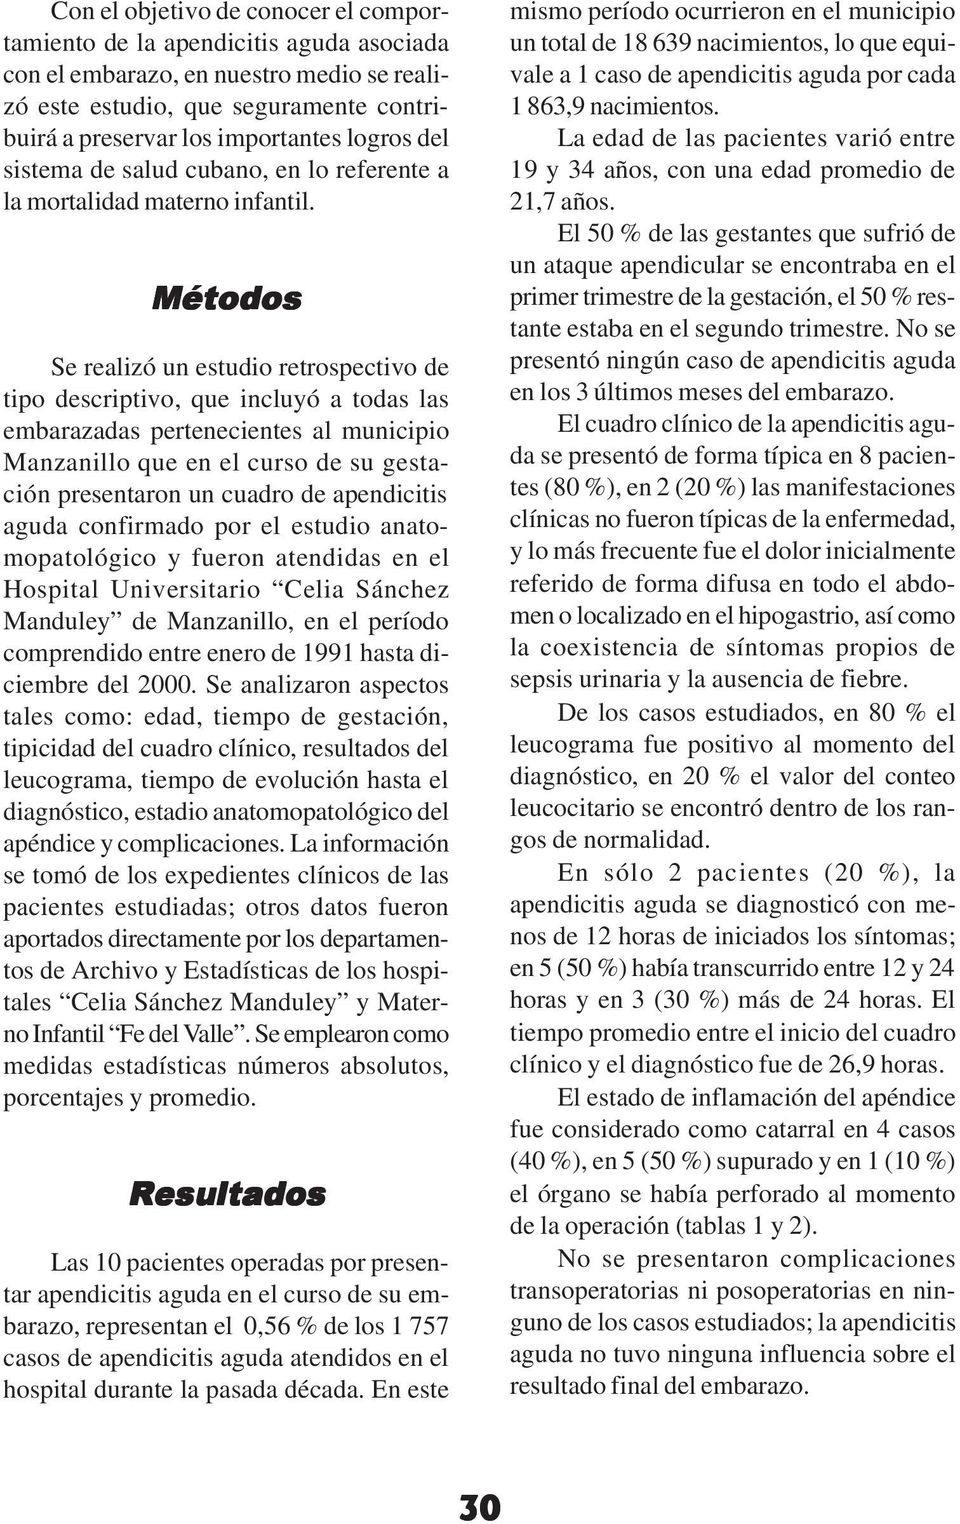 Métodos Se realizó un estudio retrospectivo de tipo descriptivo, que incluyó a todas las embarazadas pertenecientes al municipio Manzanillo que en el curso de su gestación presentaron un cuadro de